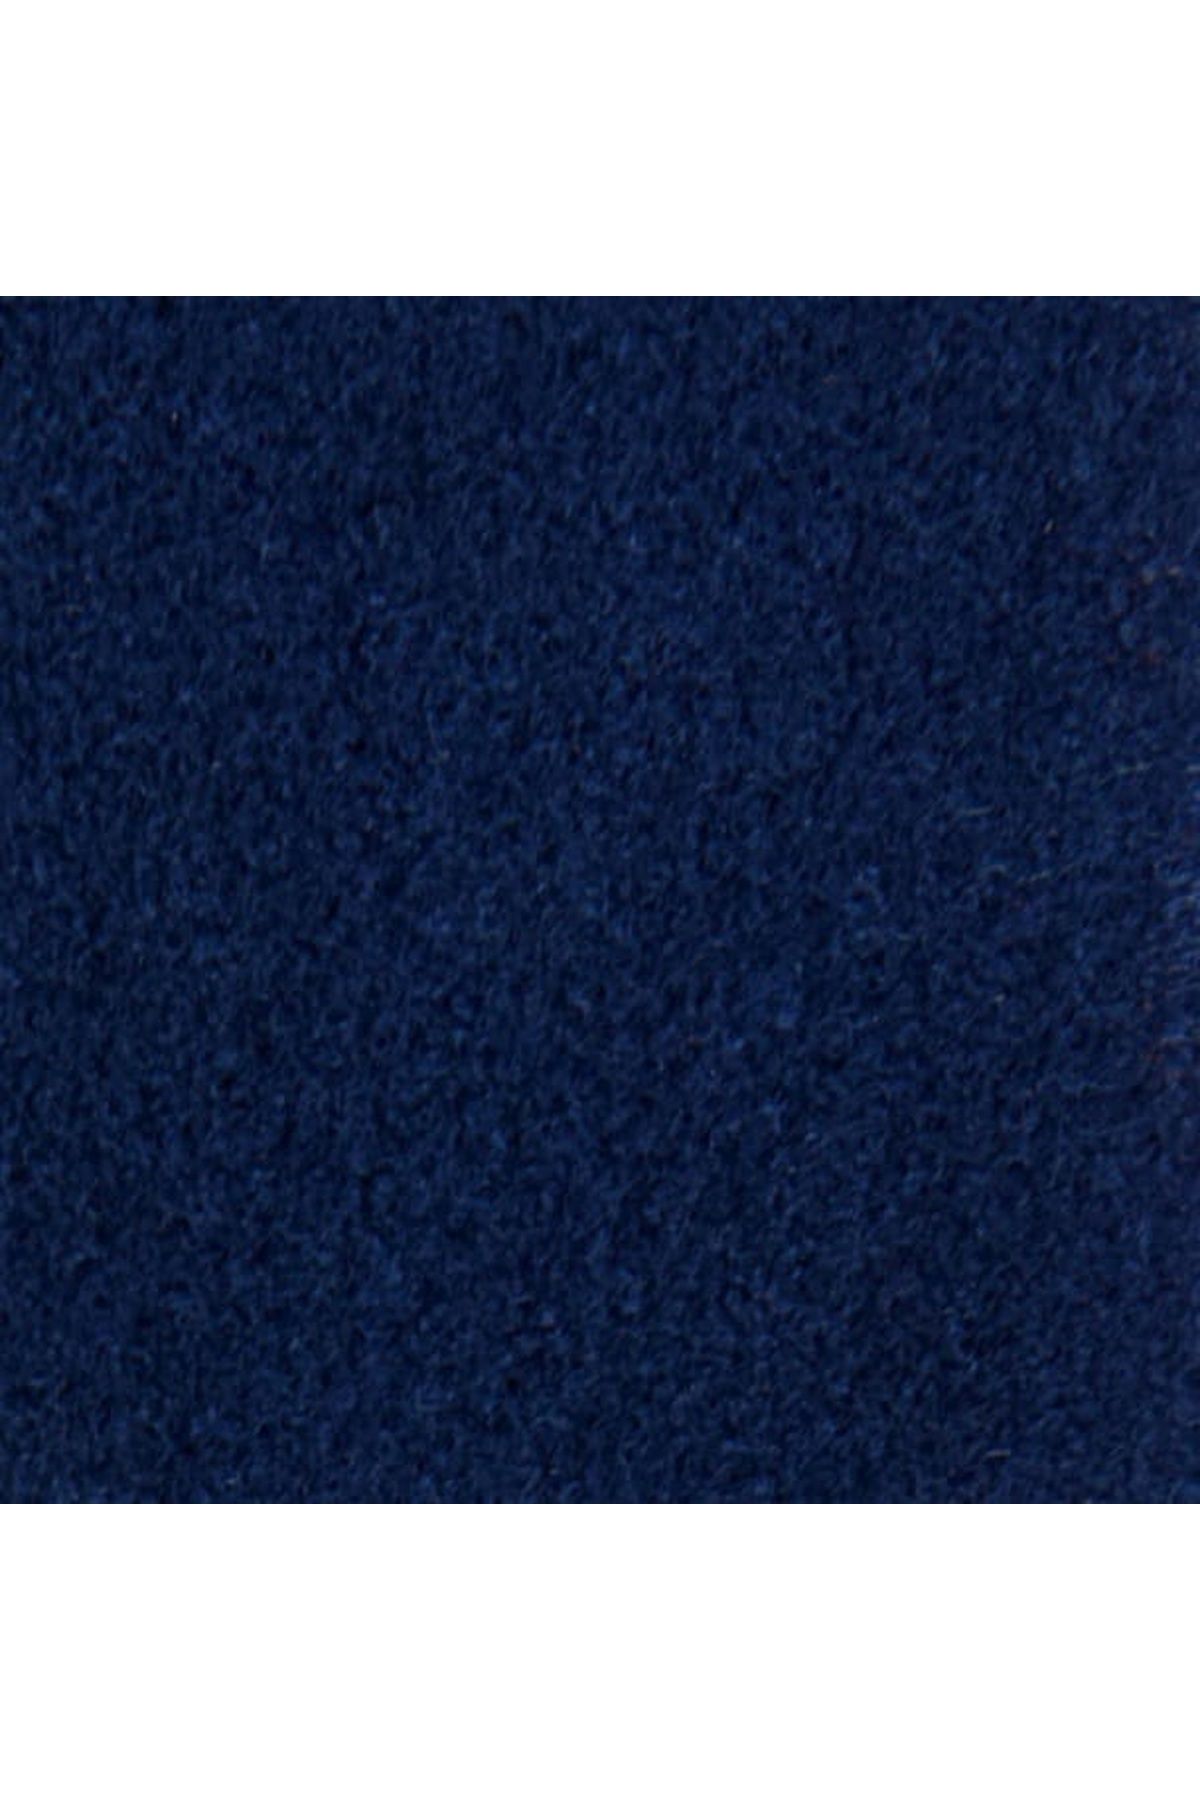 LinaByUgurr Lacivert Universal Kaliteli Tüylenmez Kalın Polar Kumaş En 180cm (1 ADET=1 METRE)